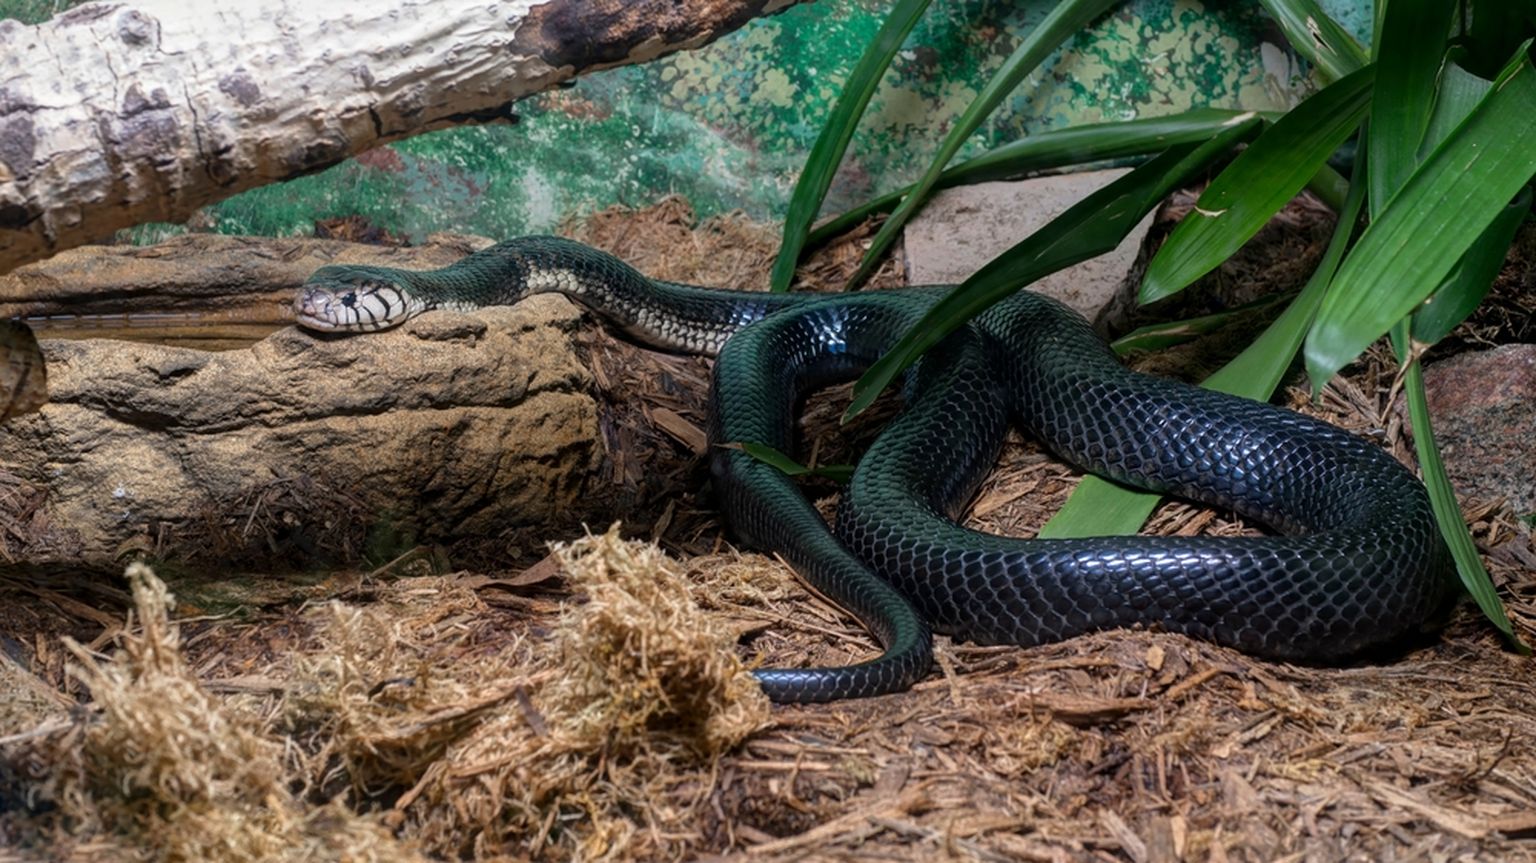 Must kobra terraariumis. Foto on illustratiivne